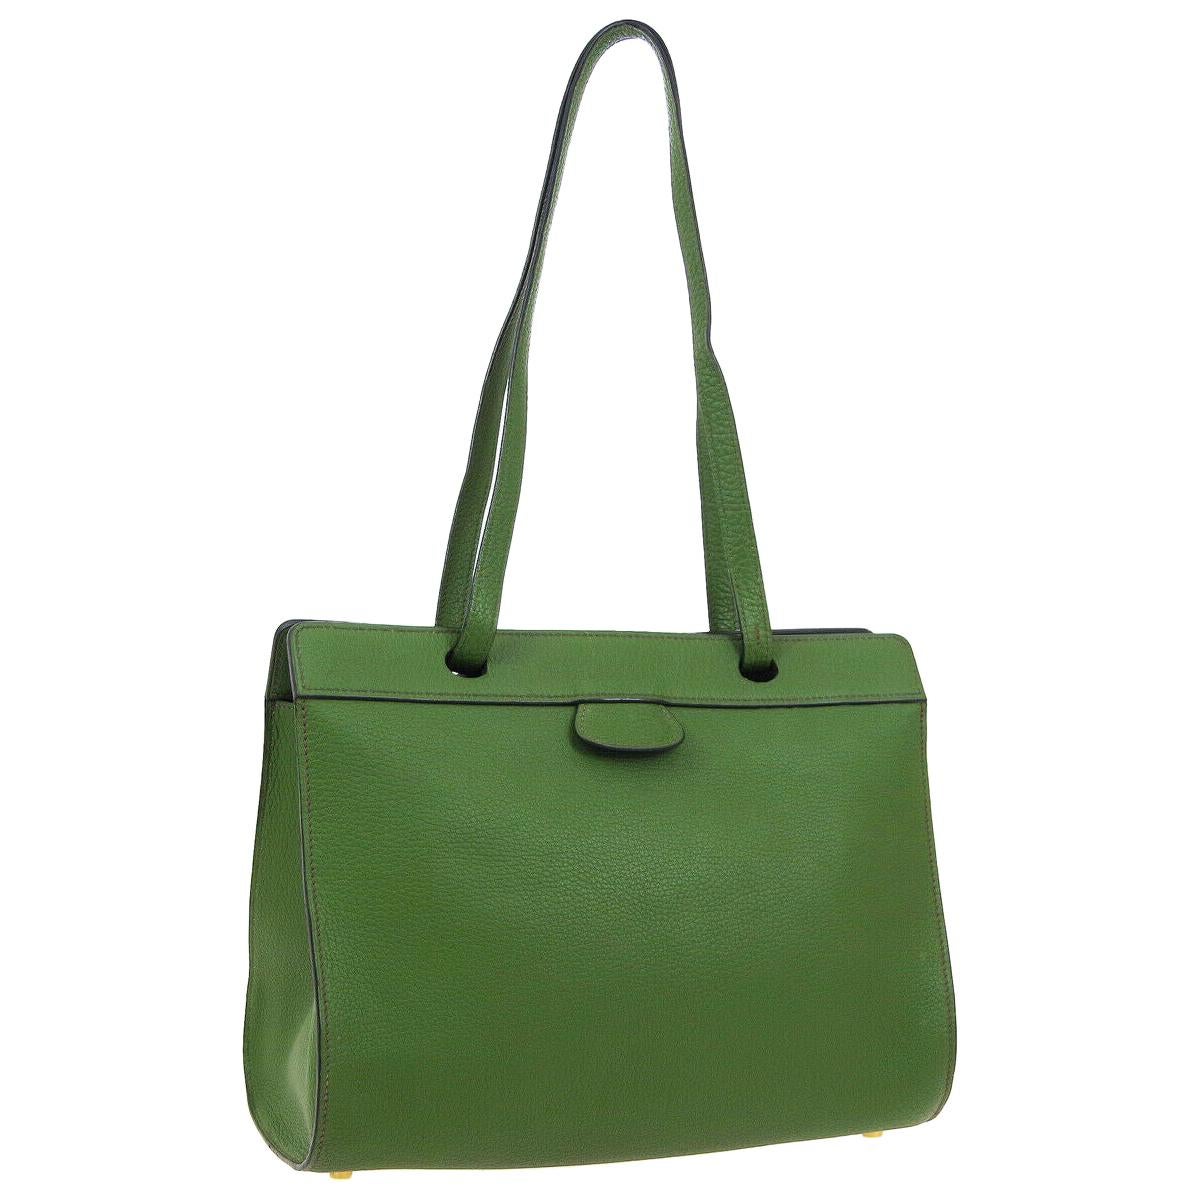 Hermes Green Leather Carryall Travel Large Shopper Shoulder Tote Bag